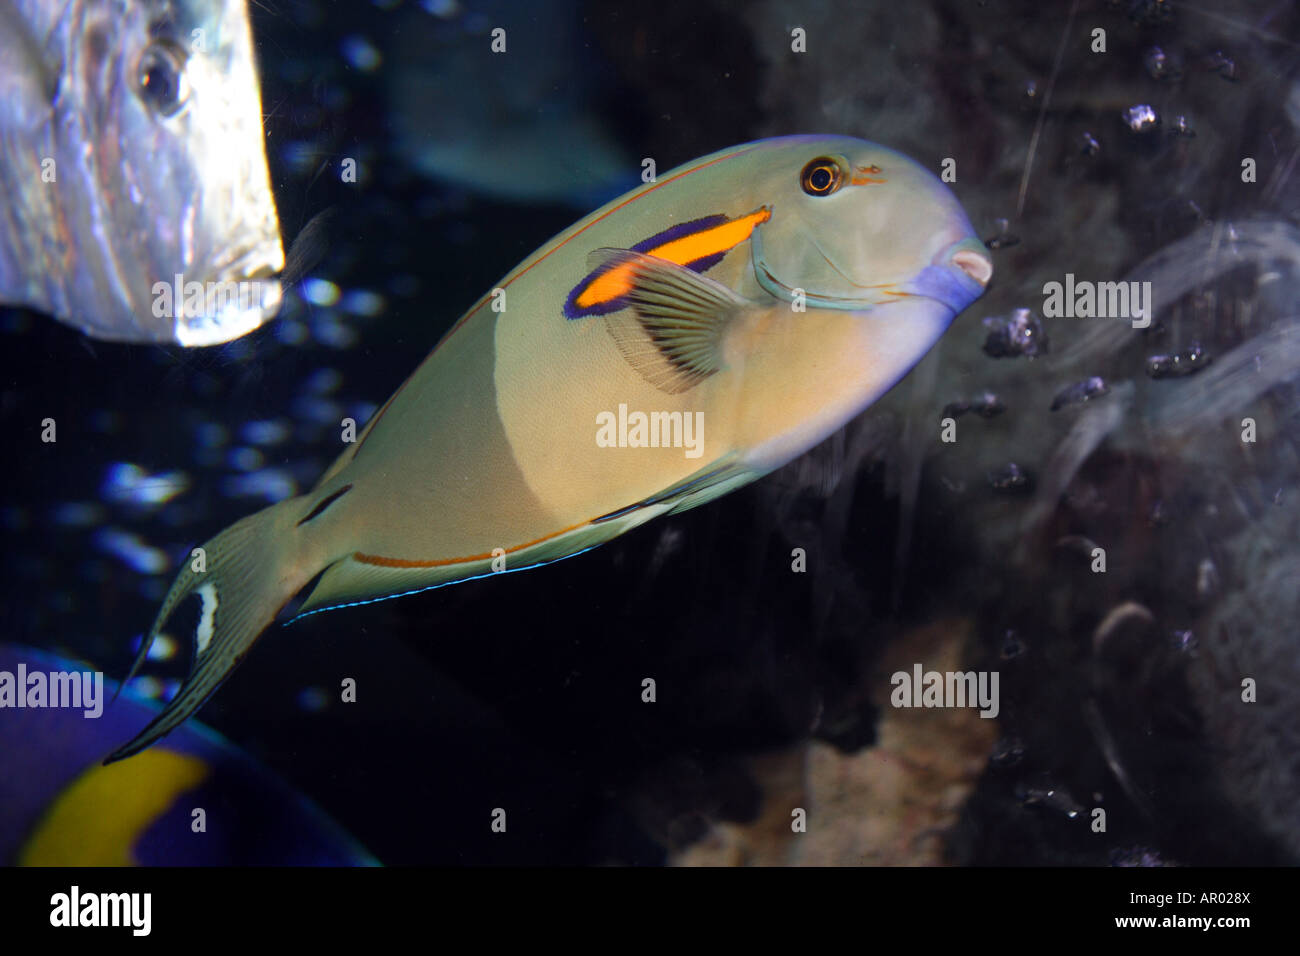 Orangeshoulder Tang. Orange-epaulette Surgeonfish (Acanthurus olivaceous) Stock Photo